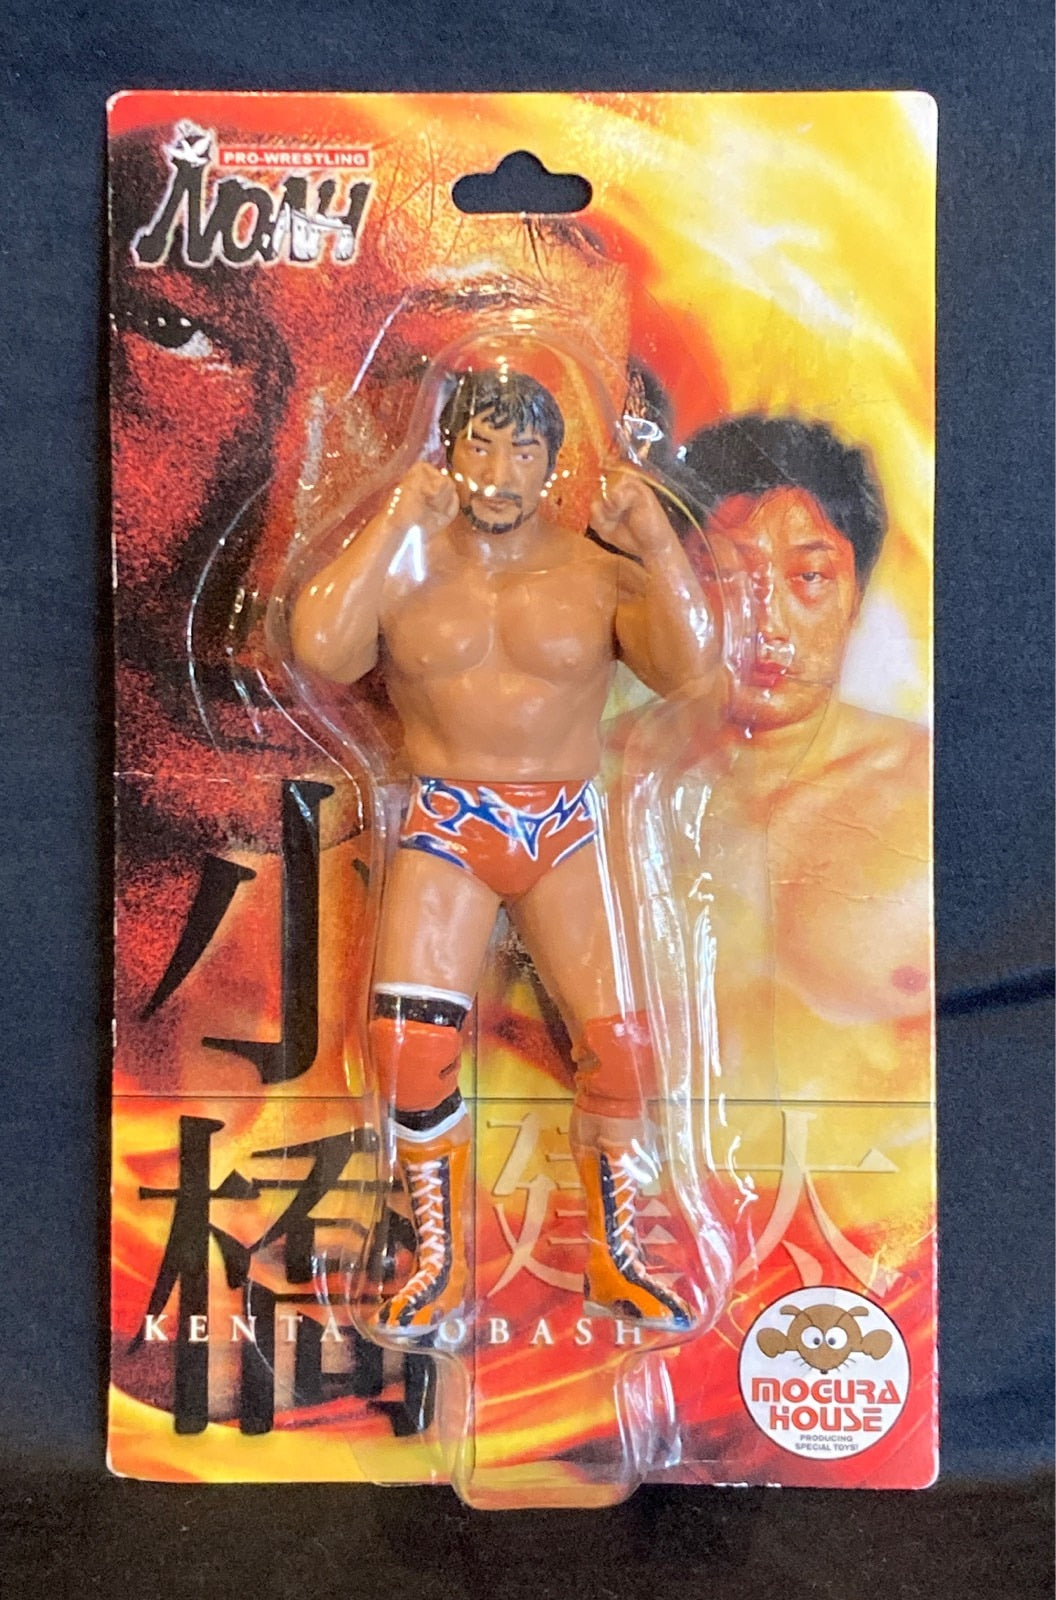 Pro-Wrestling NOAH Mogura House Basic Kenta Kobashi [With Orange Tribal Trunks & Beard]